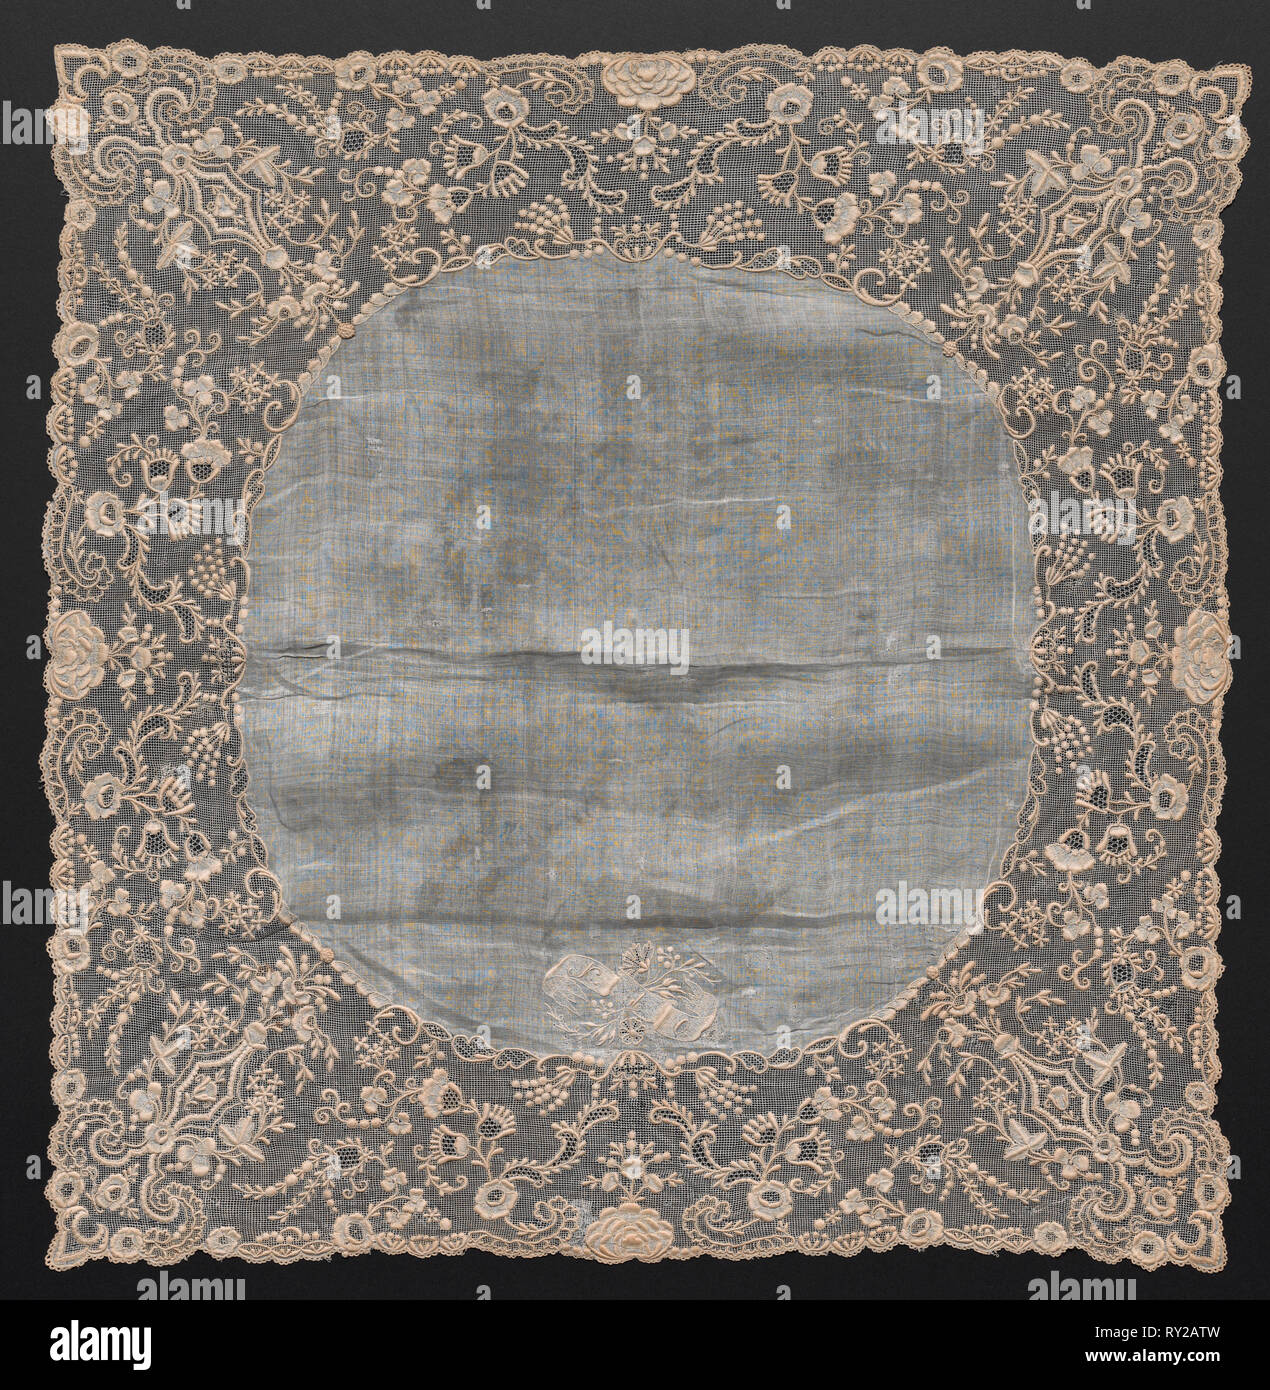 Mouchoir, début des années 1800. France, début xixe siècle. Broderie : lin ; total : 48,2 x 48,8 cm (19 x 19 3/16 po Banque D'Images